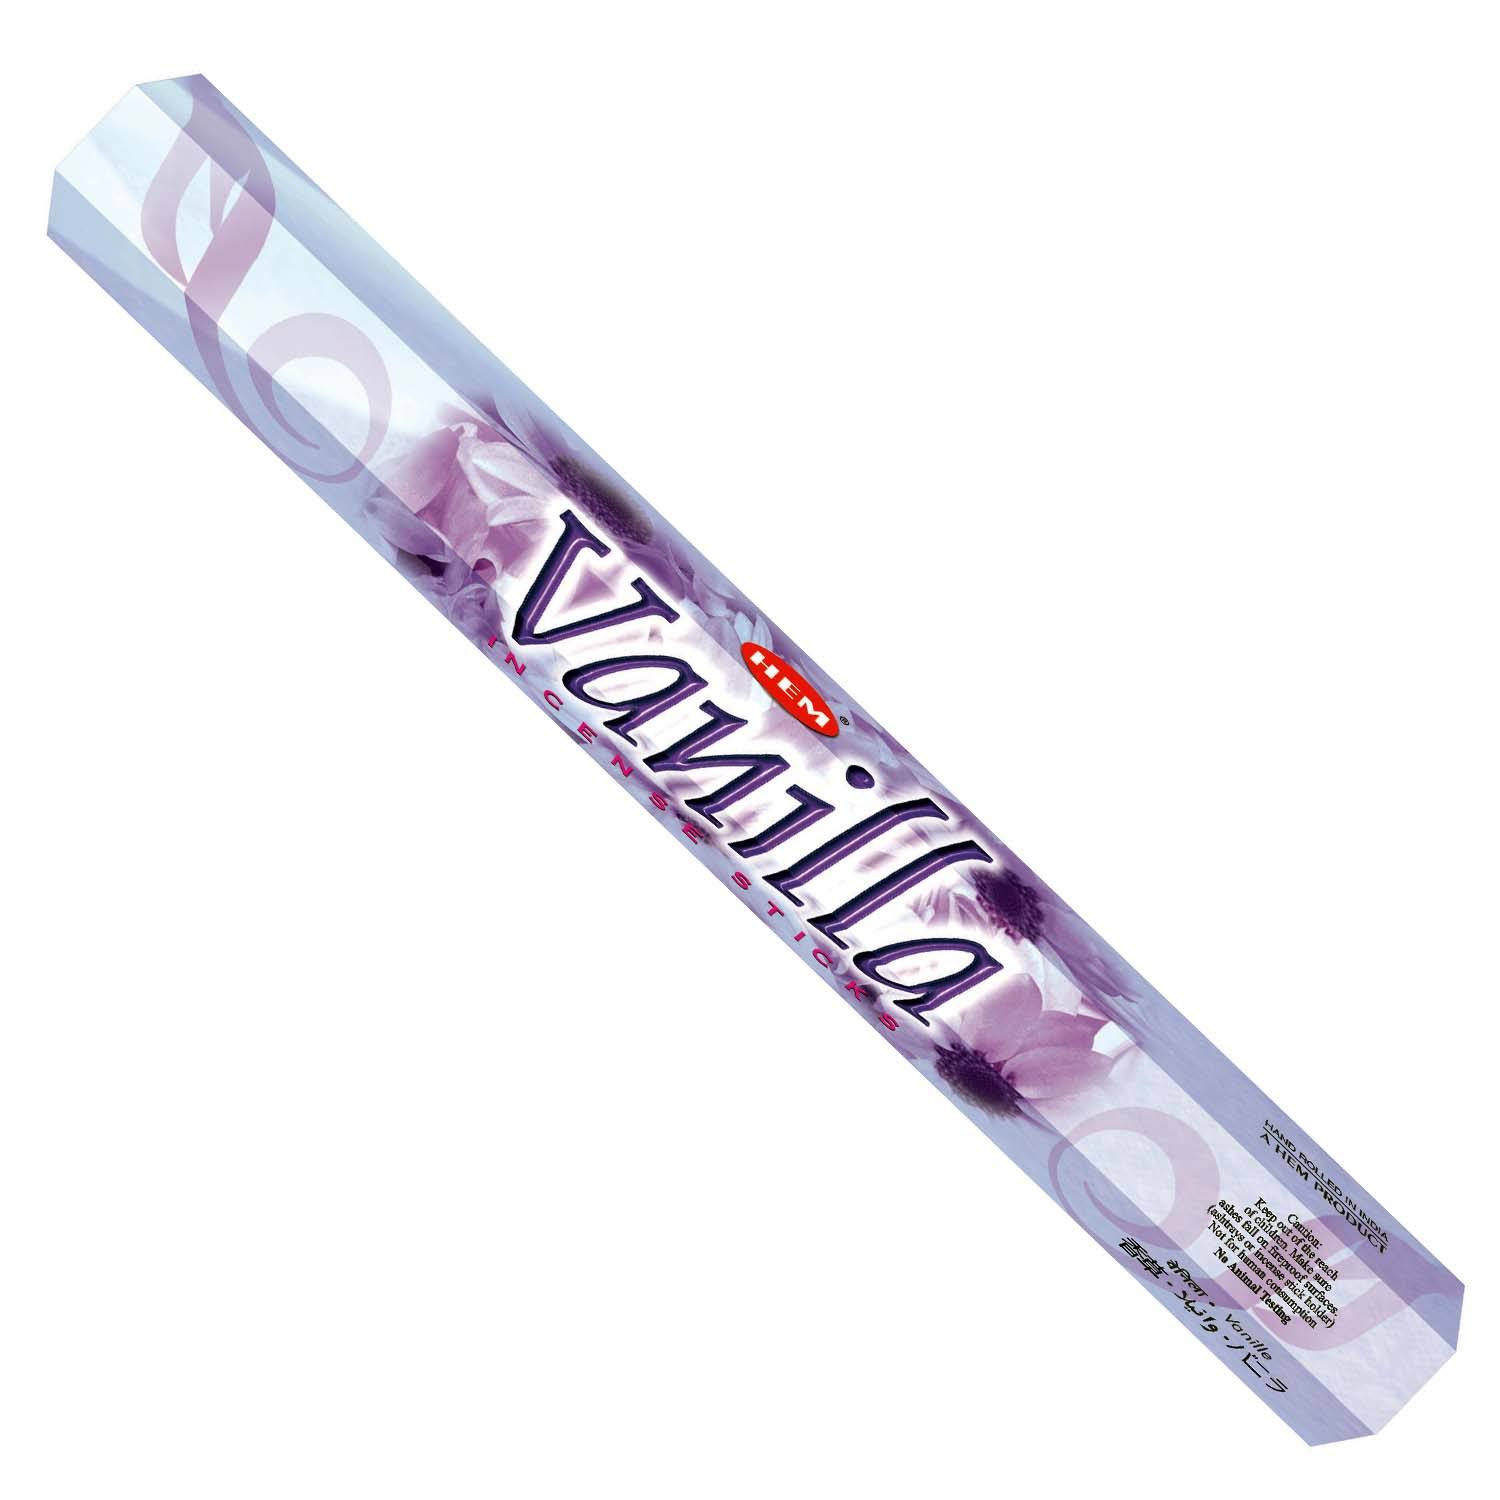 Hem Incense Sticks - Vanilla